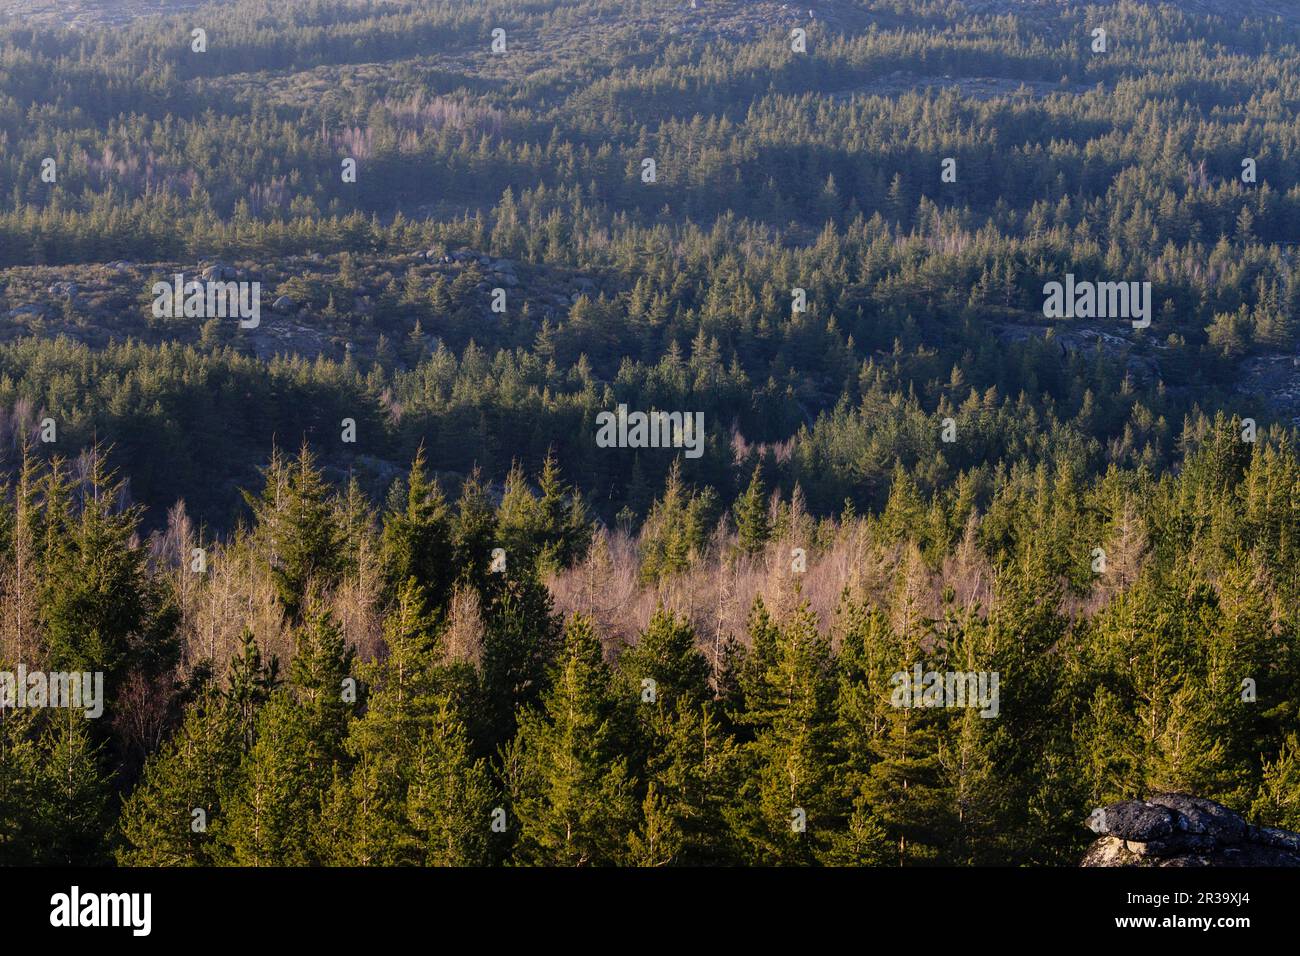 bosque de coniferas, Abeto de Douglas o pino de oregón, Pseudotsuga menziensii , Serra Da Estrela, Beira Alta, Portugal, europa. Stock Photo